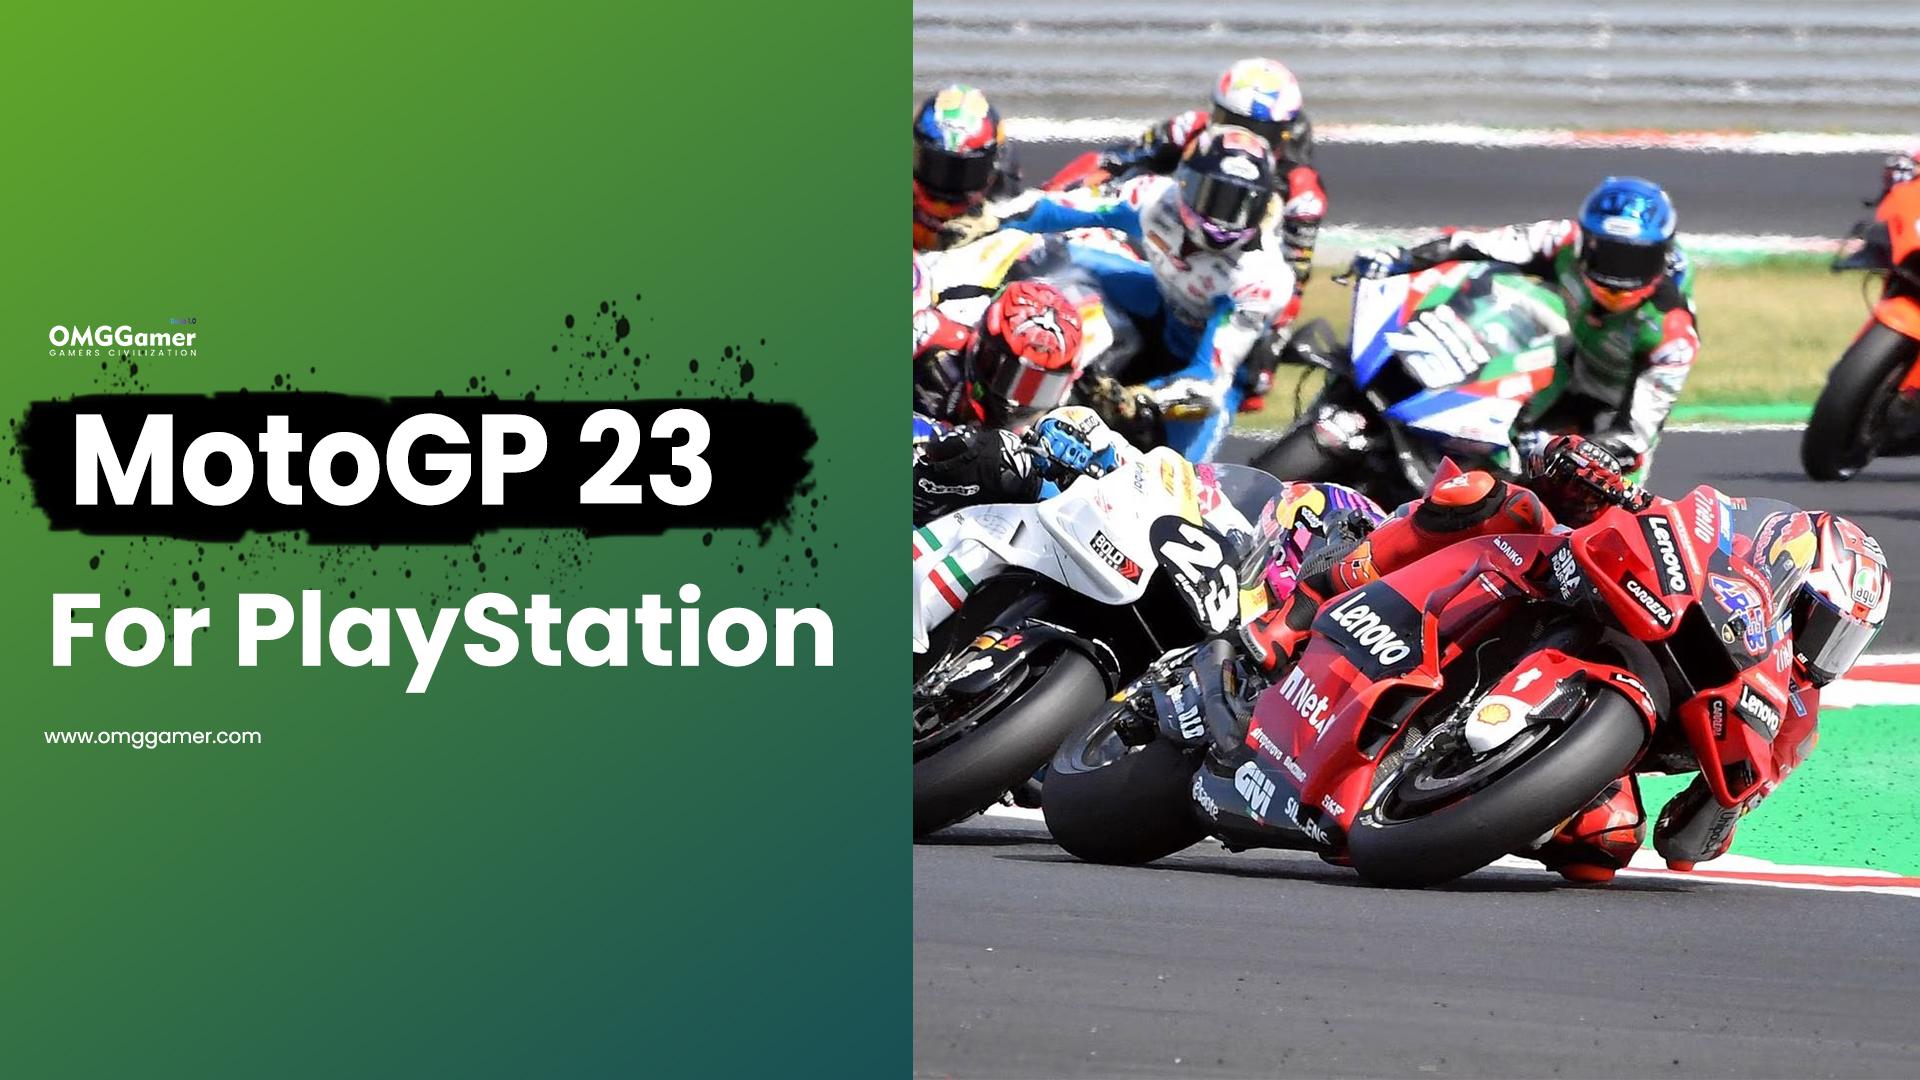 MotoGP 23 for PlayStation